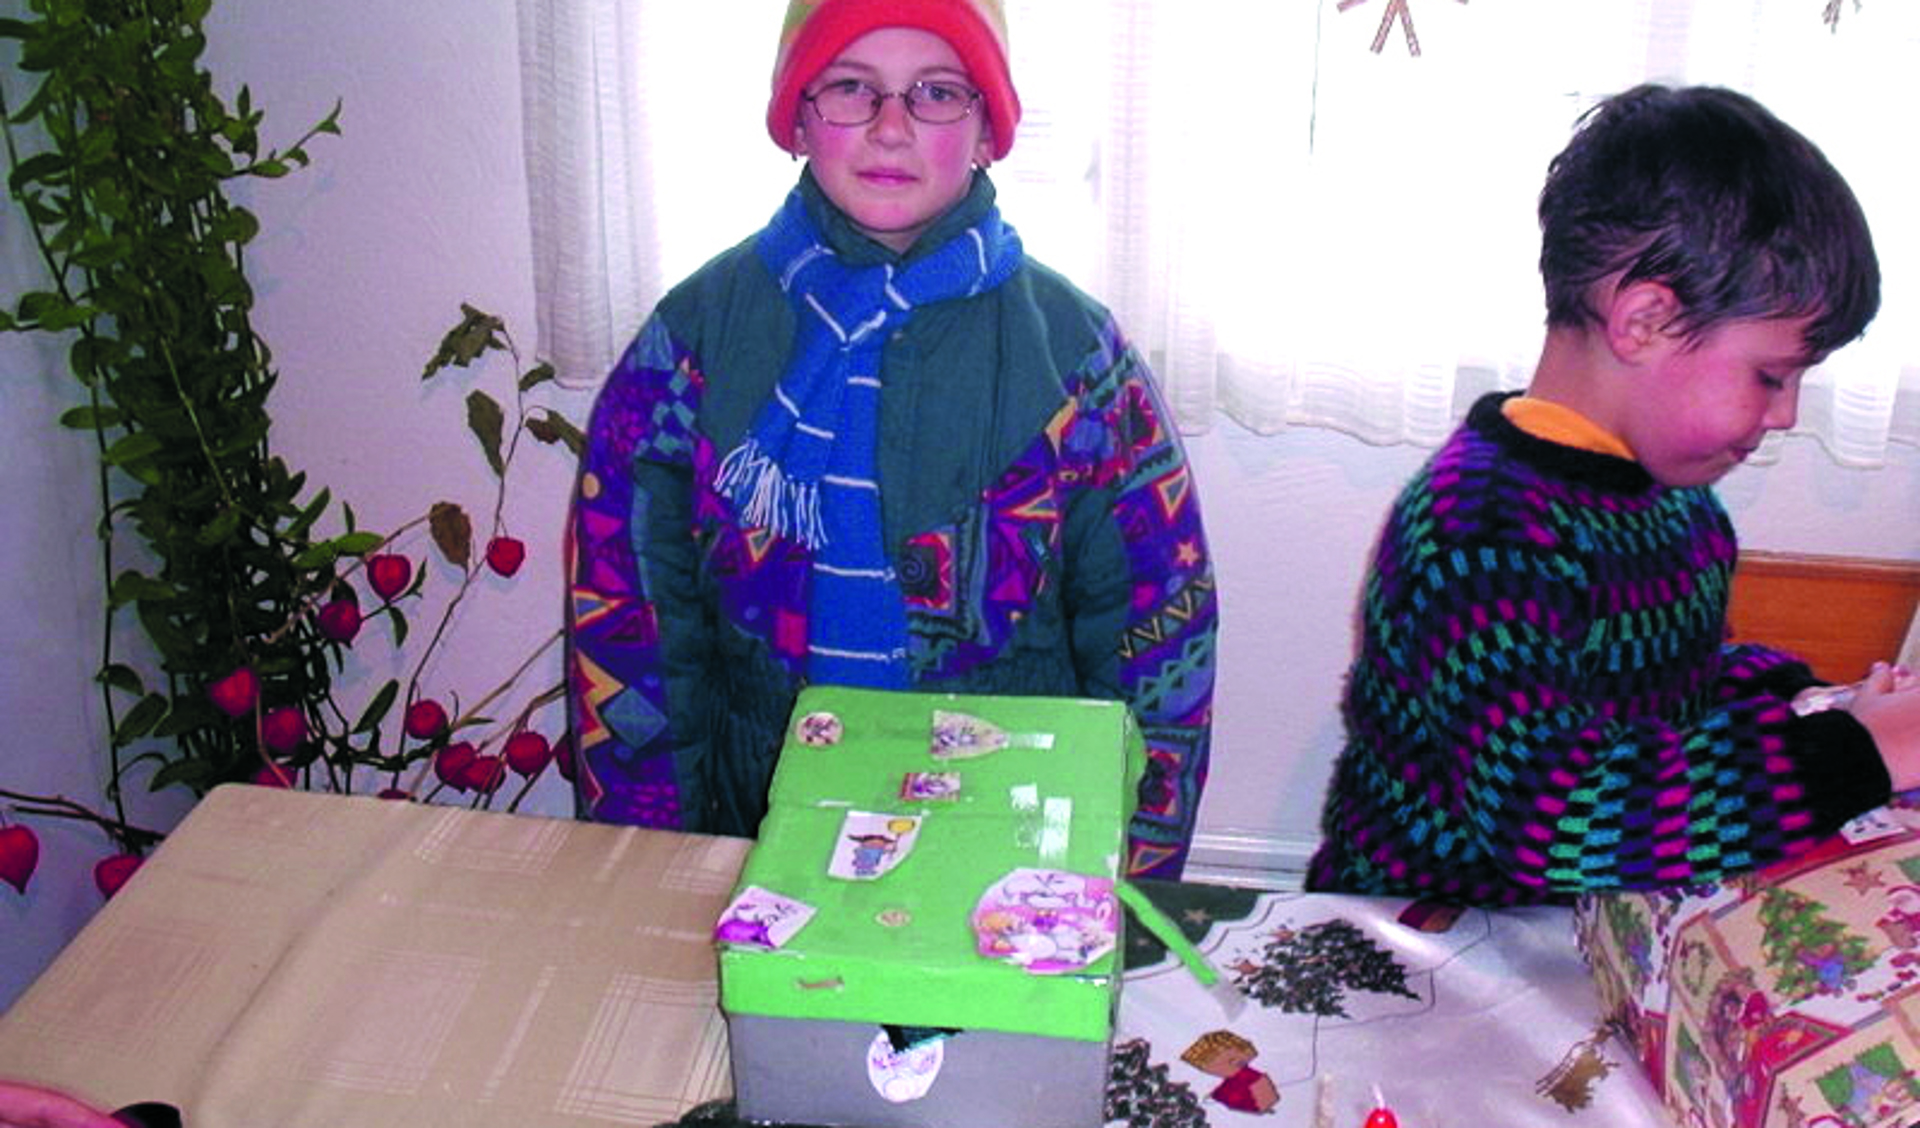 De kinderen in Roemenië worden wederom verblijd met leuke cadeautjes in schoenendozen. (Foto's: aangeleverd)